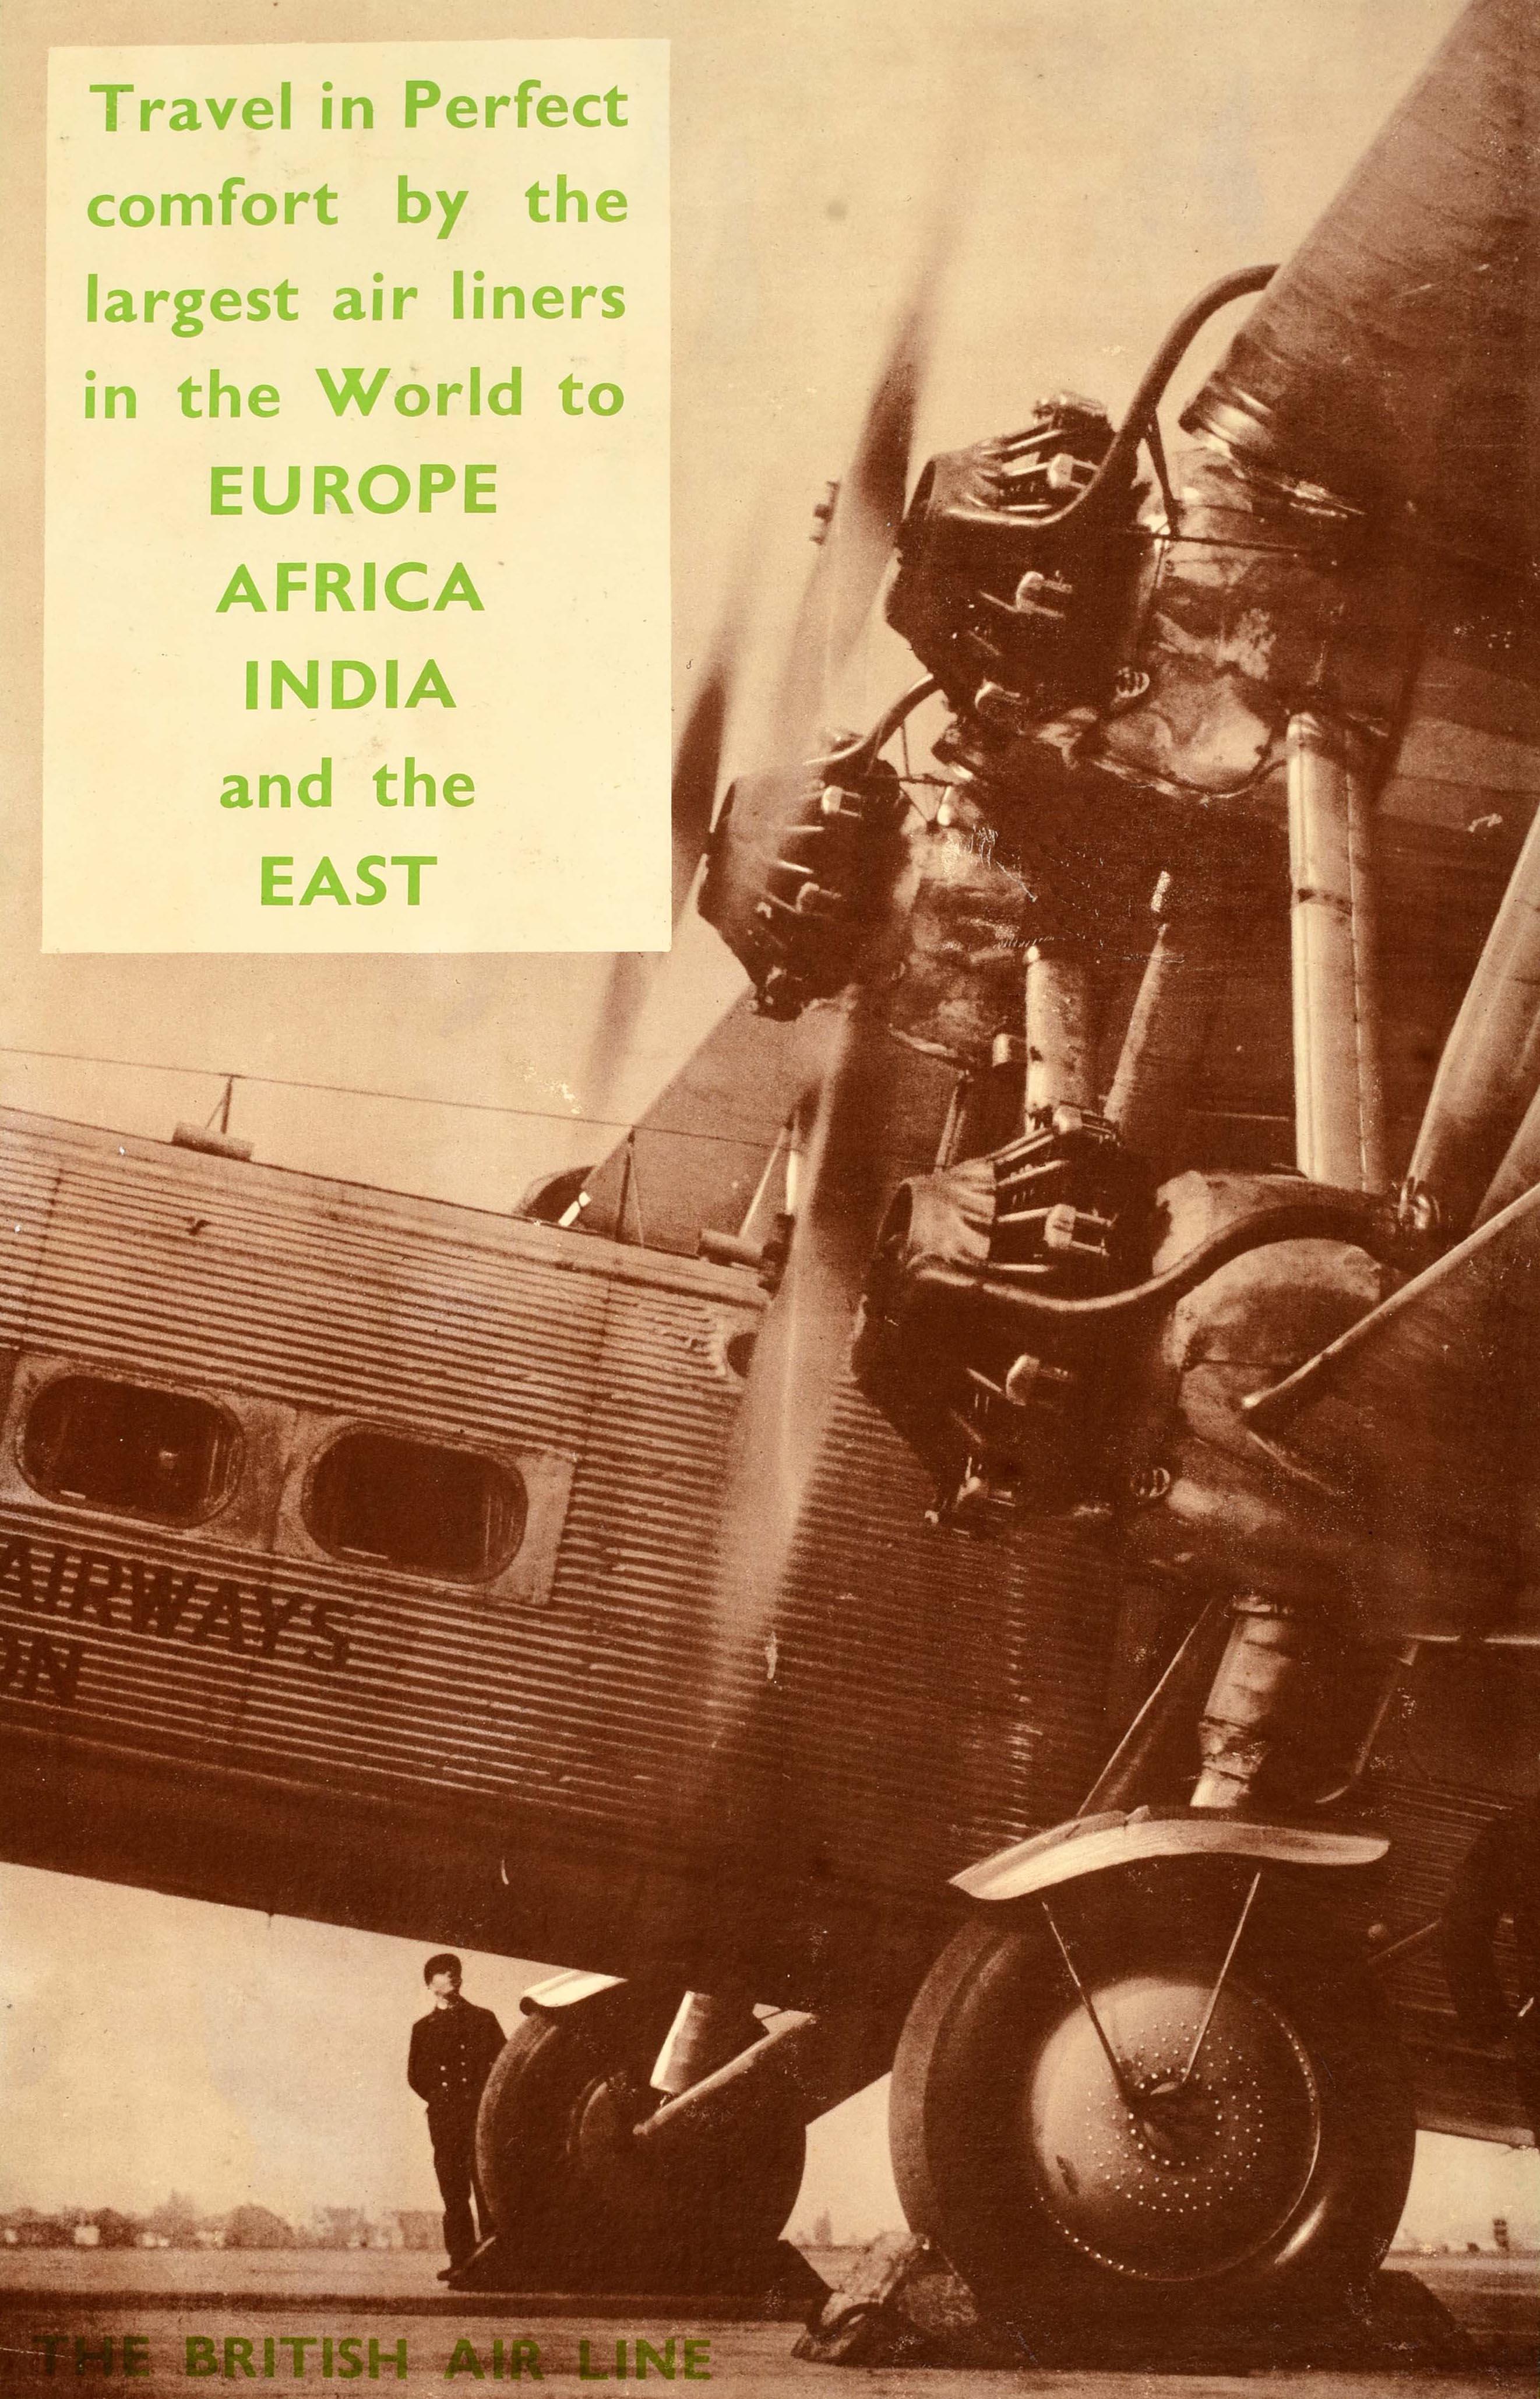 Original-Reise-Werbeplakat - Imperial Airways The British Air Line Reisen Sie in perfektem Komfort mit den größten Fluglinien der Welt nach Europa, Afrika, Indien und in den Osten - mit einer sepiafarbenen Fotografie eines Mannes in Uniform, der am